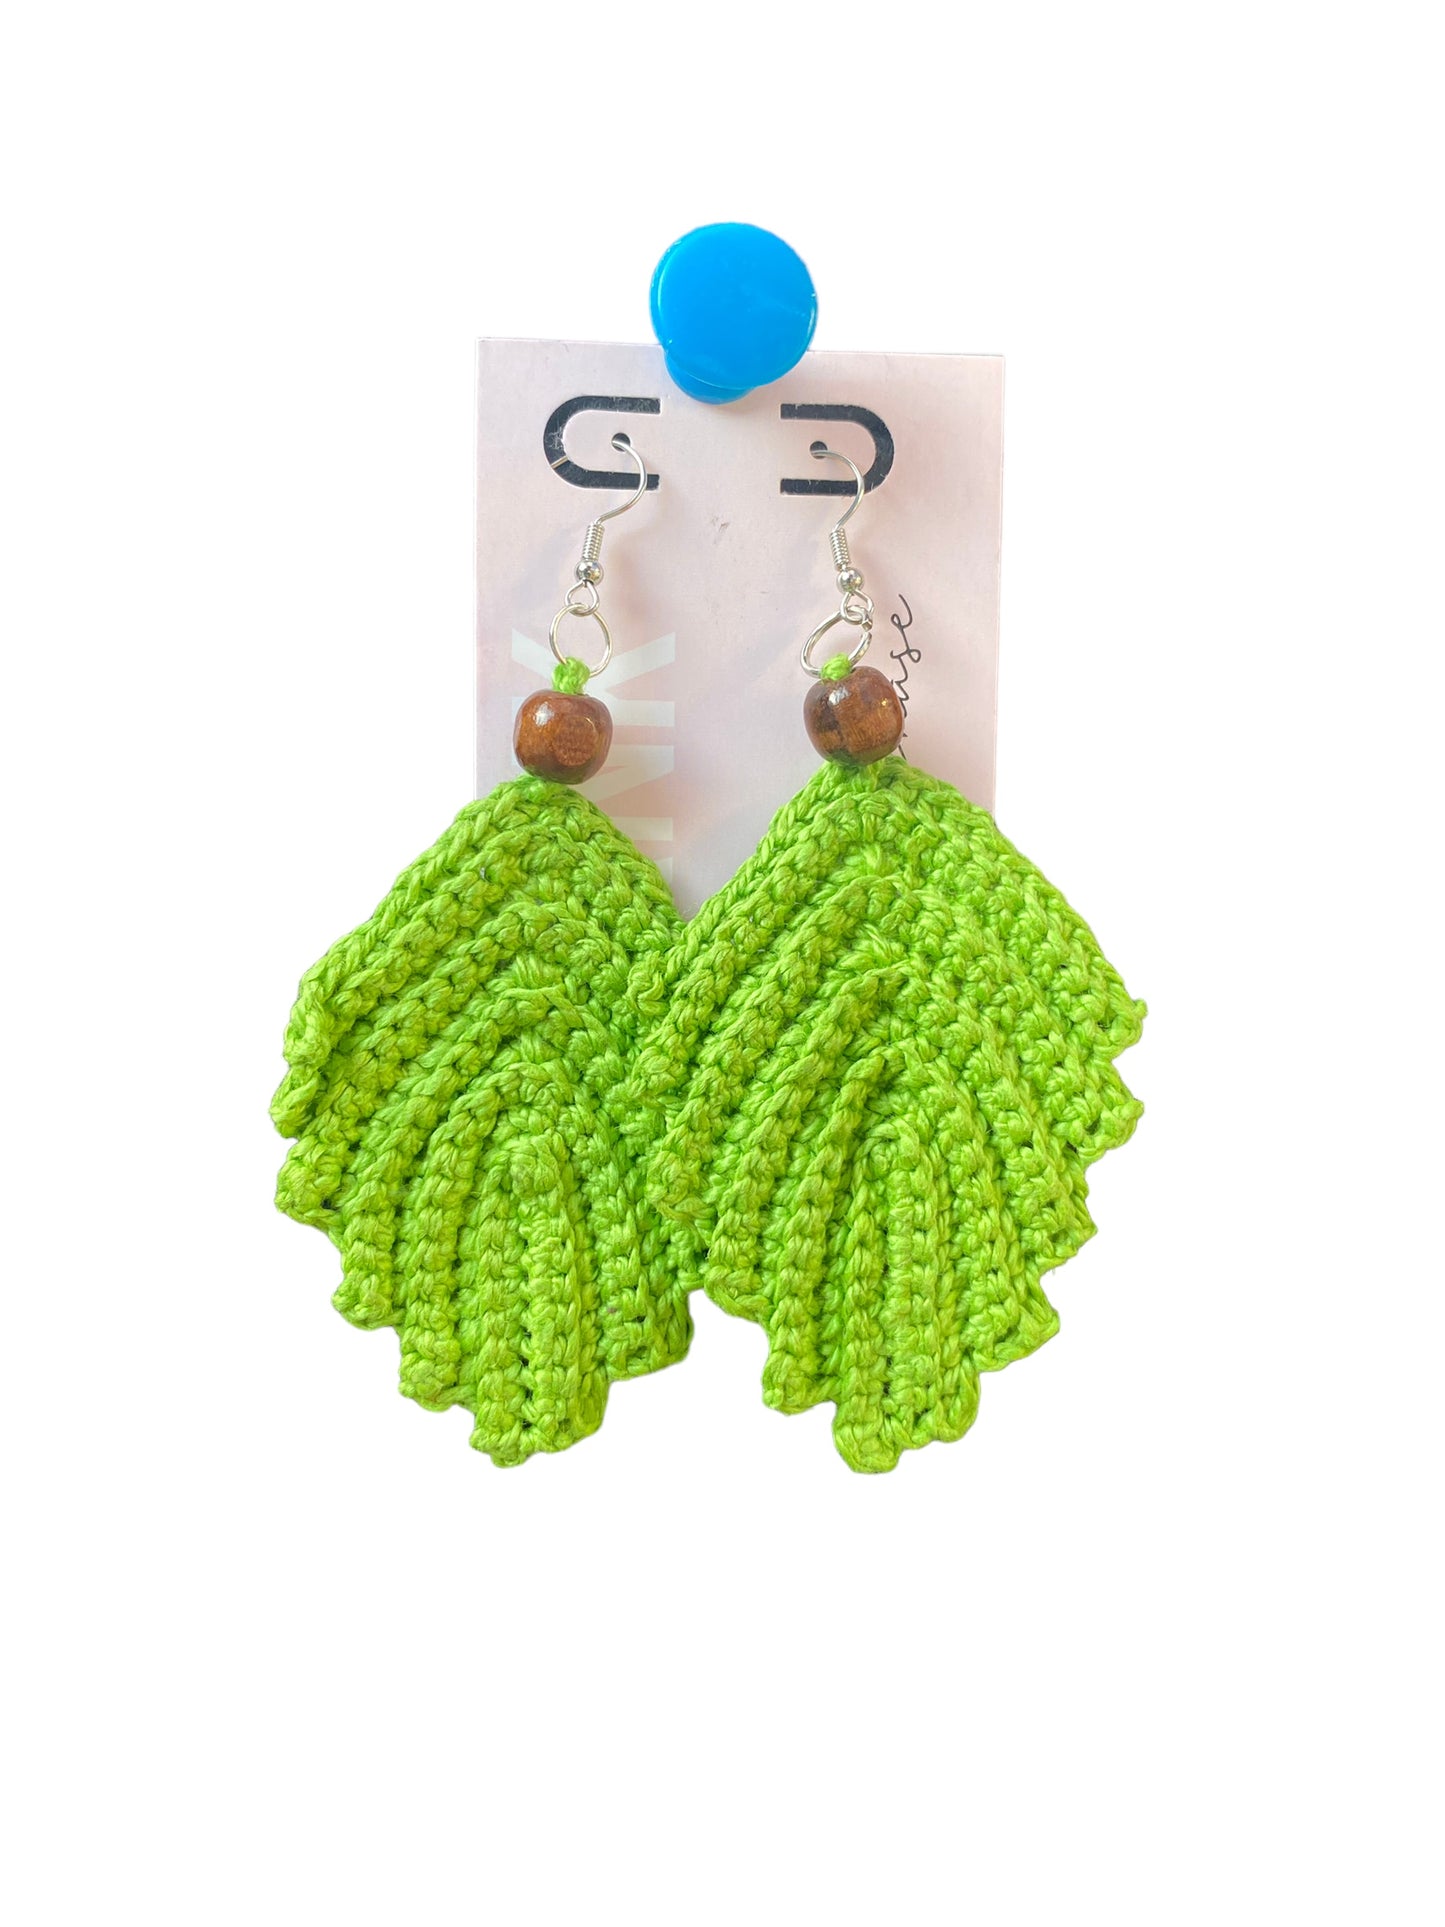 Apple Green|Feather Earrings|Crochet|Handmade